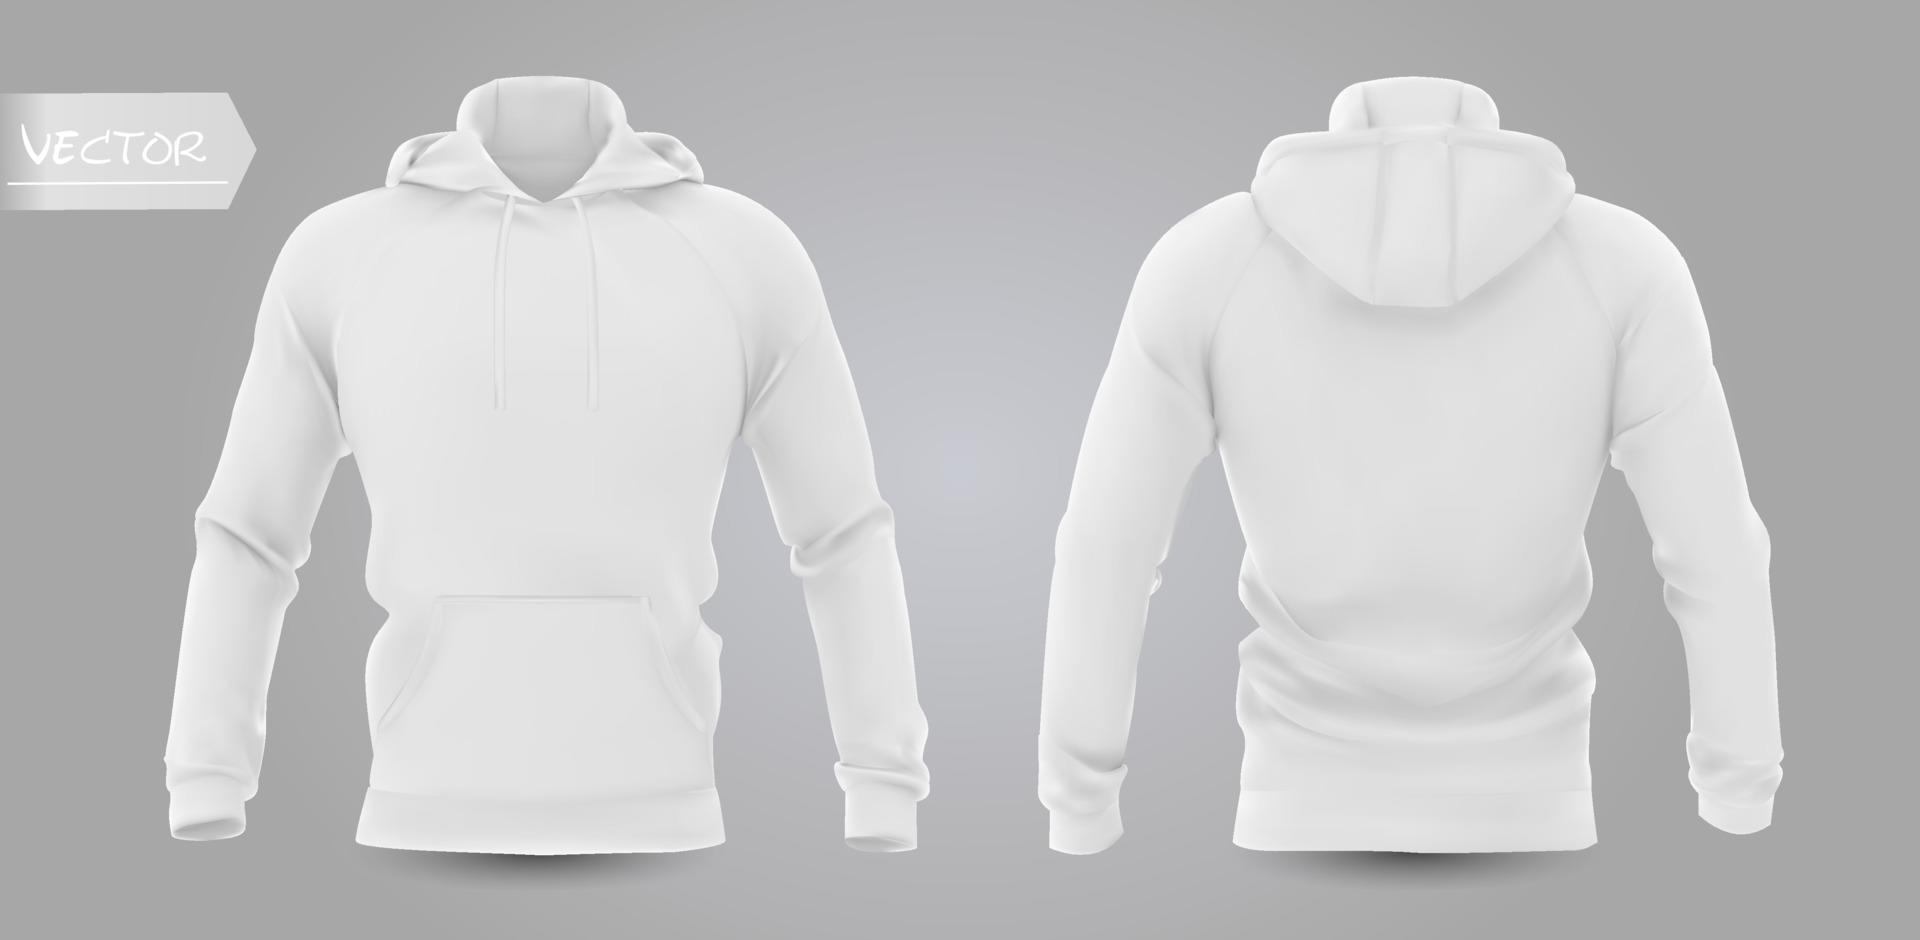 Maquette de sweat-shirt à capuche pour hommes blancs en vue avant, arrière et latérale, isolée sur fond gris. Illustration vectorielle réaliste 3D, sweat-shirt formel ou décontracté. vecteur